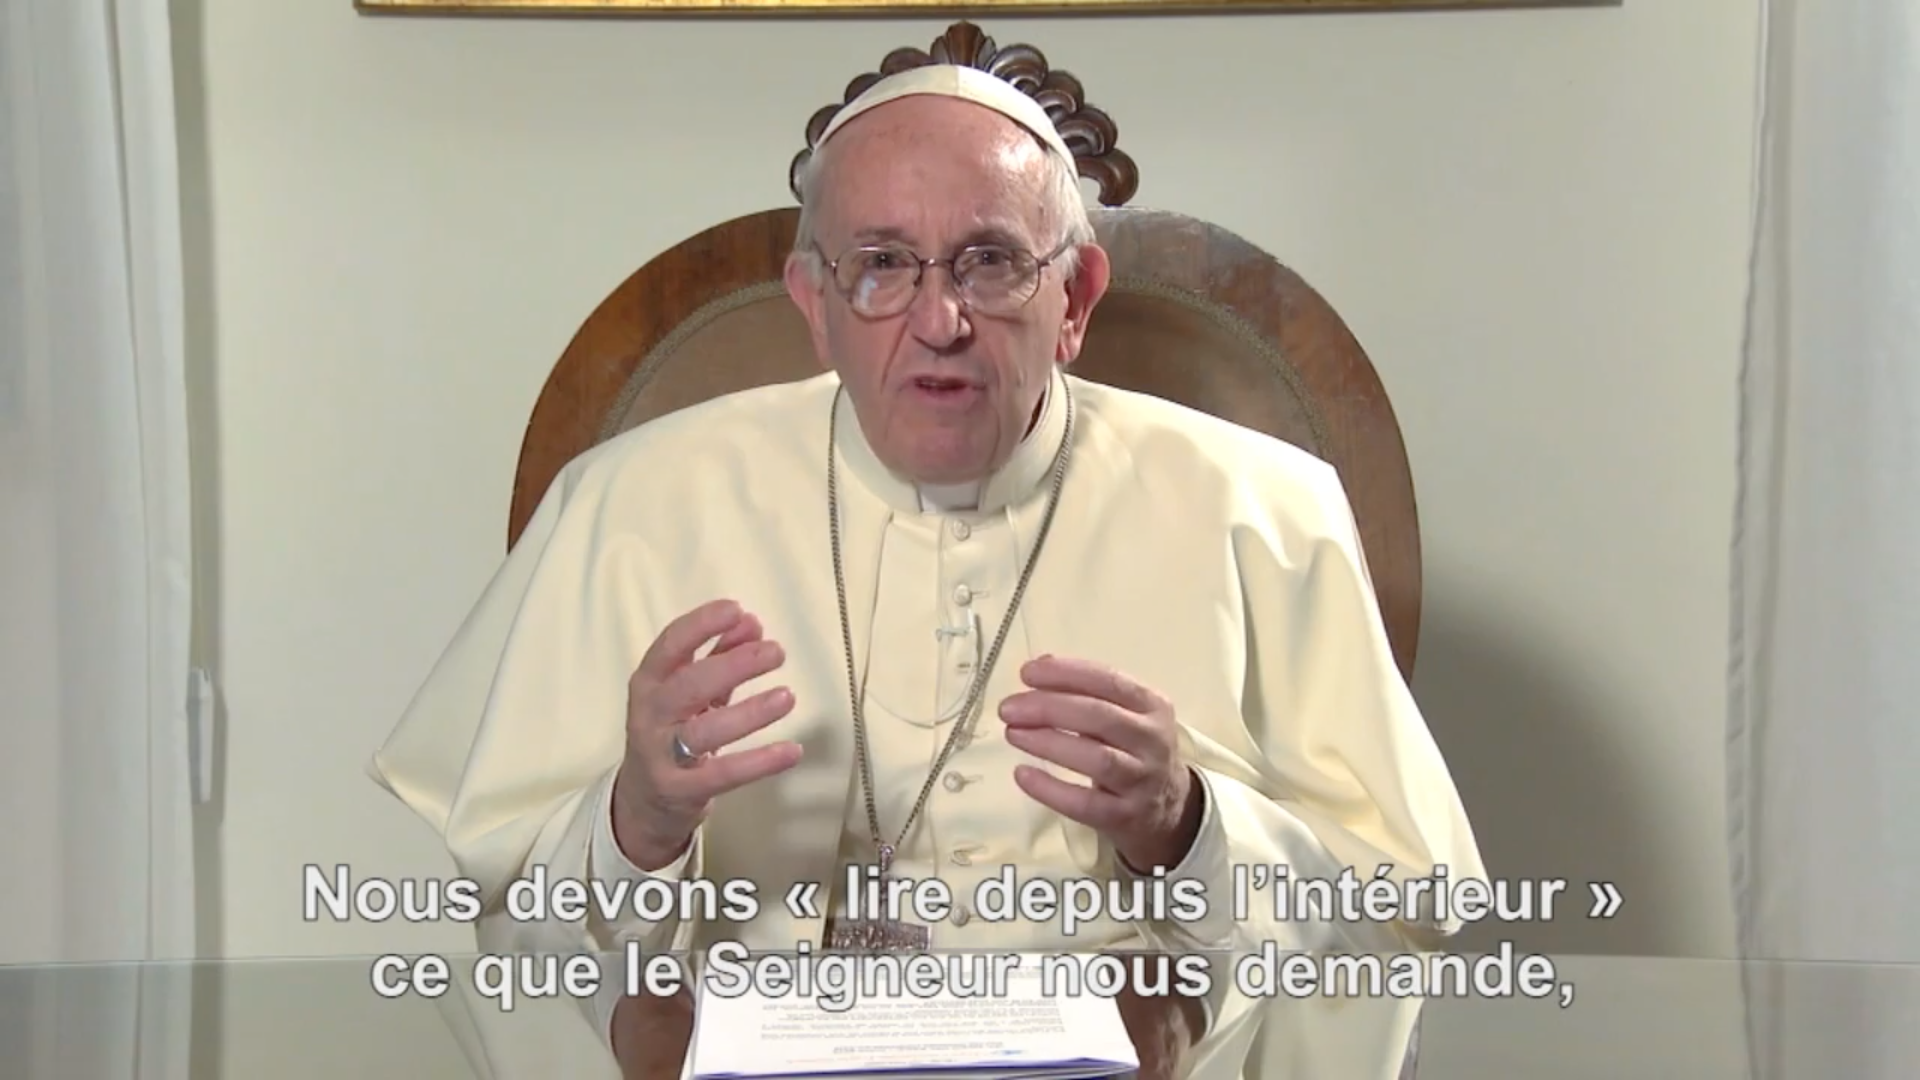 capture @ La Vidéo du Pape, mars 2018